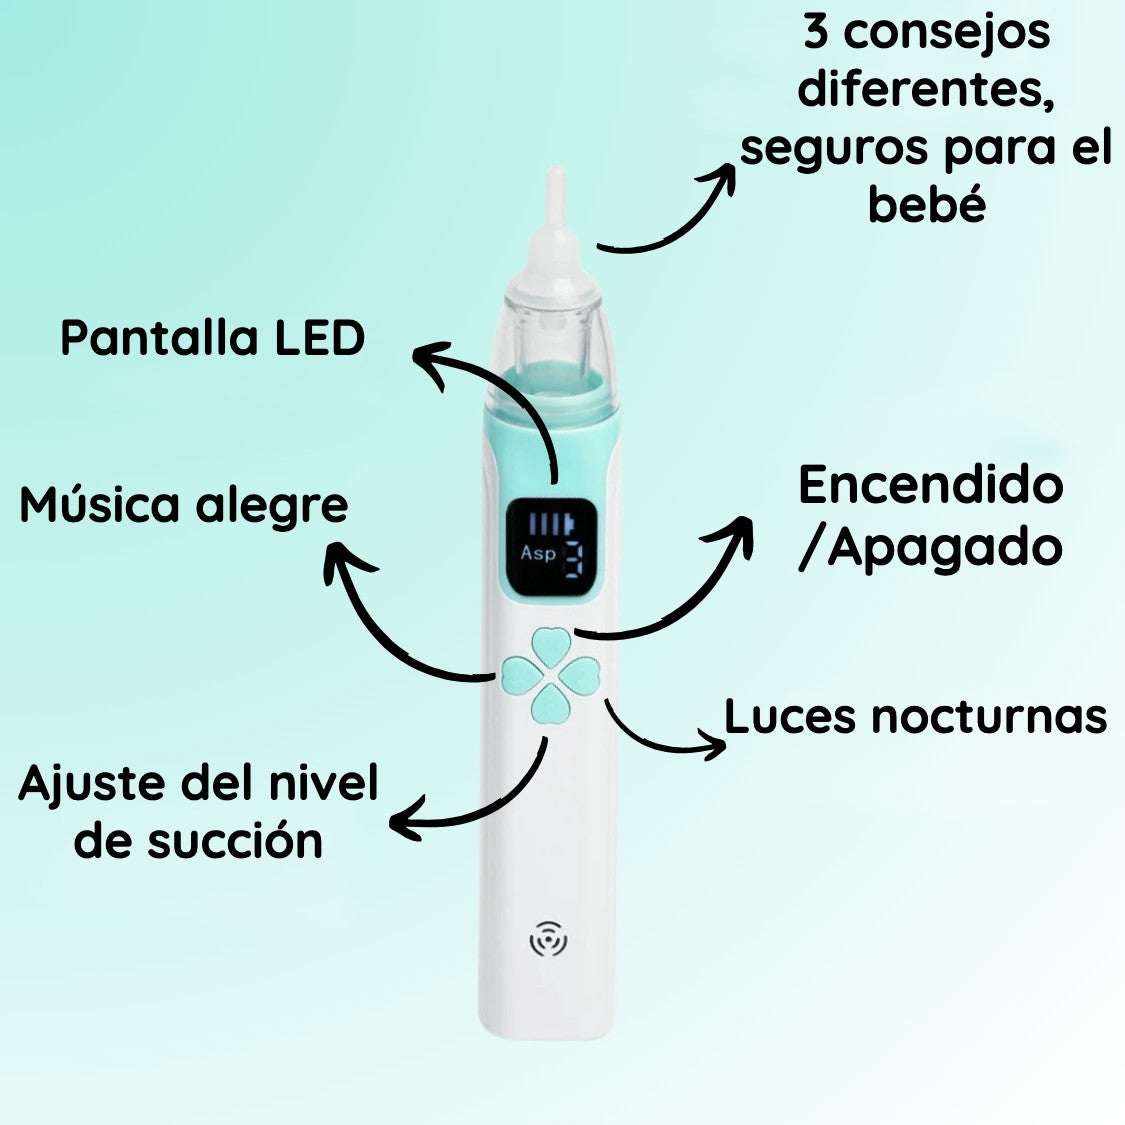 Deluvo - Aspirador eléctrico para bebés - Espana Bazar